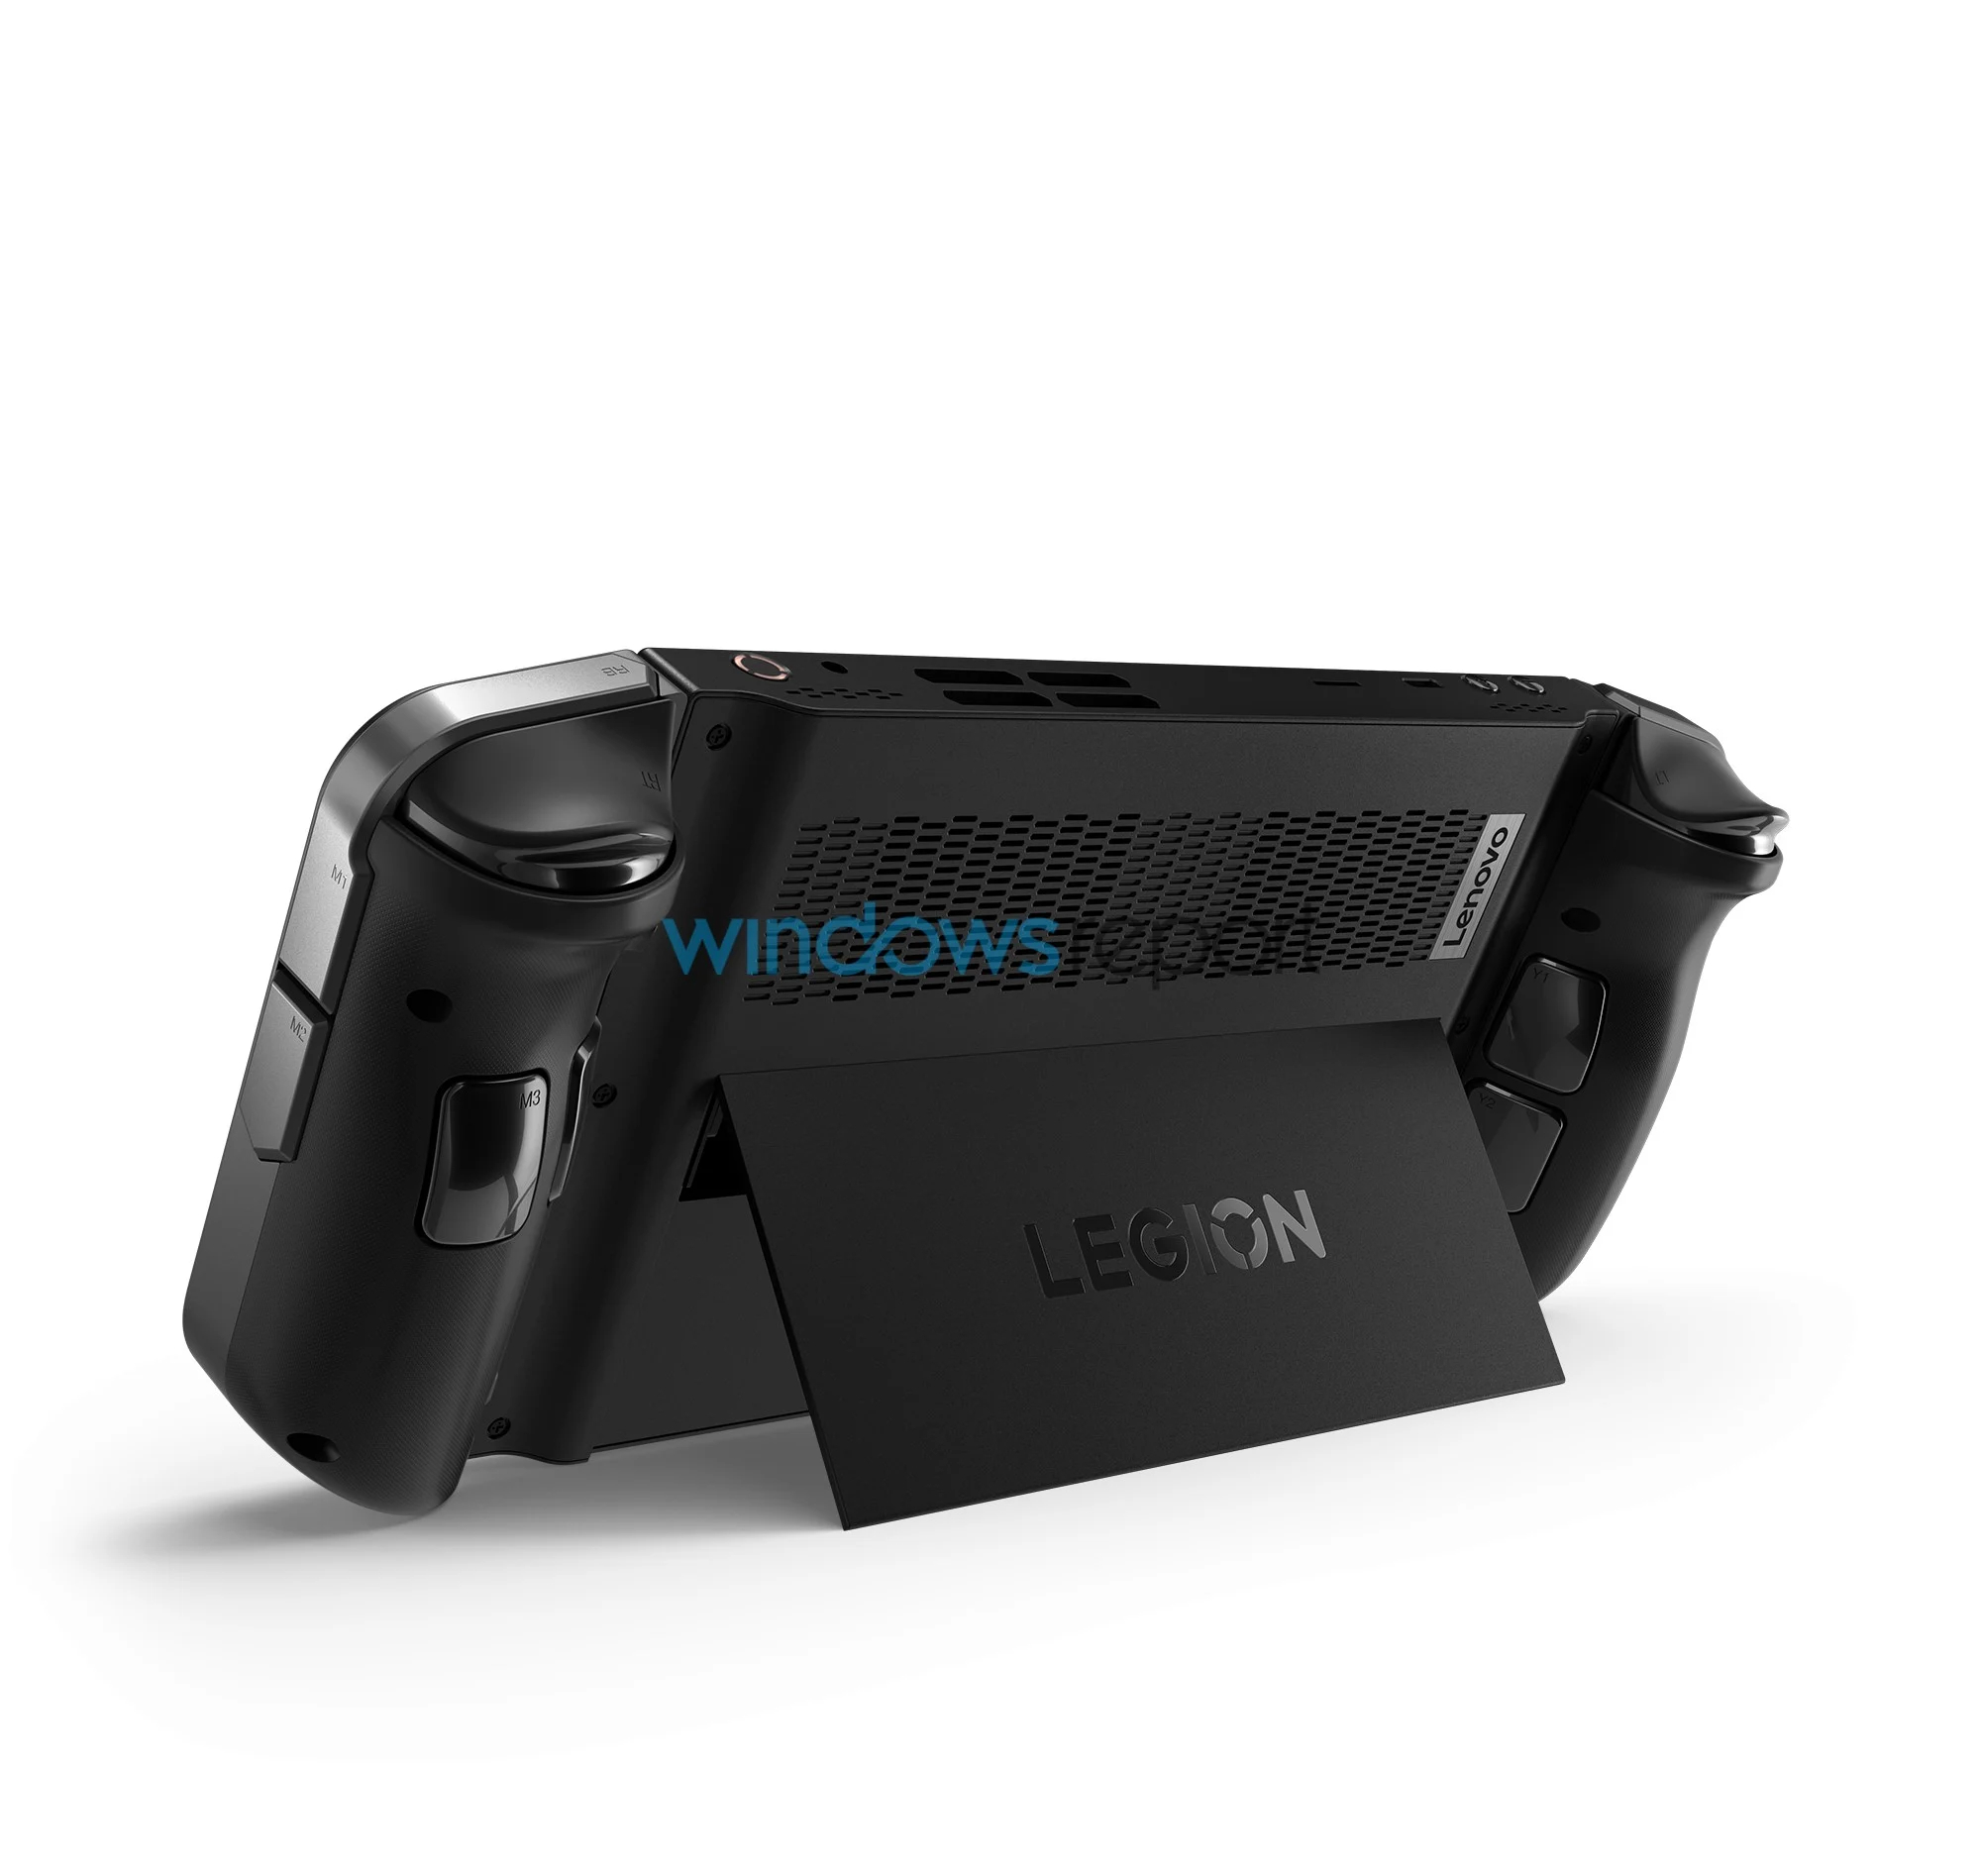 Immagine pubblicata in relazione al seguente contenuto: Prime foto della console Legion Go con cui Lenovo sfida ROG Ally e Steam Deck | Nome immagine: news34752_Lenovo-Legion-Go_3.jpg